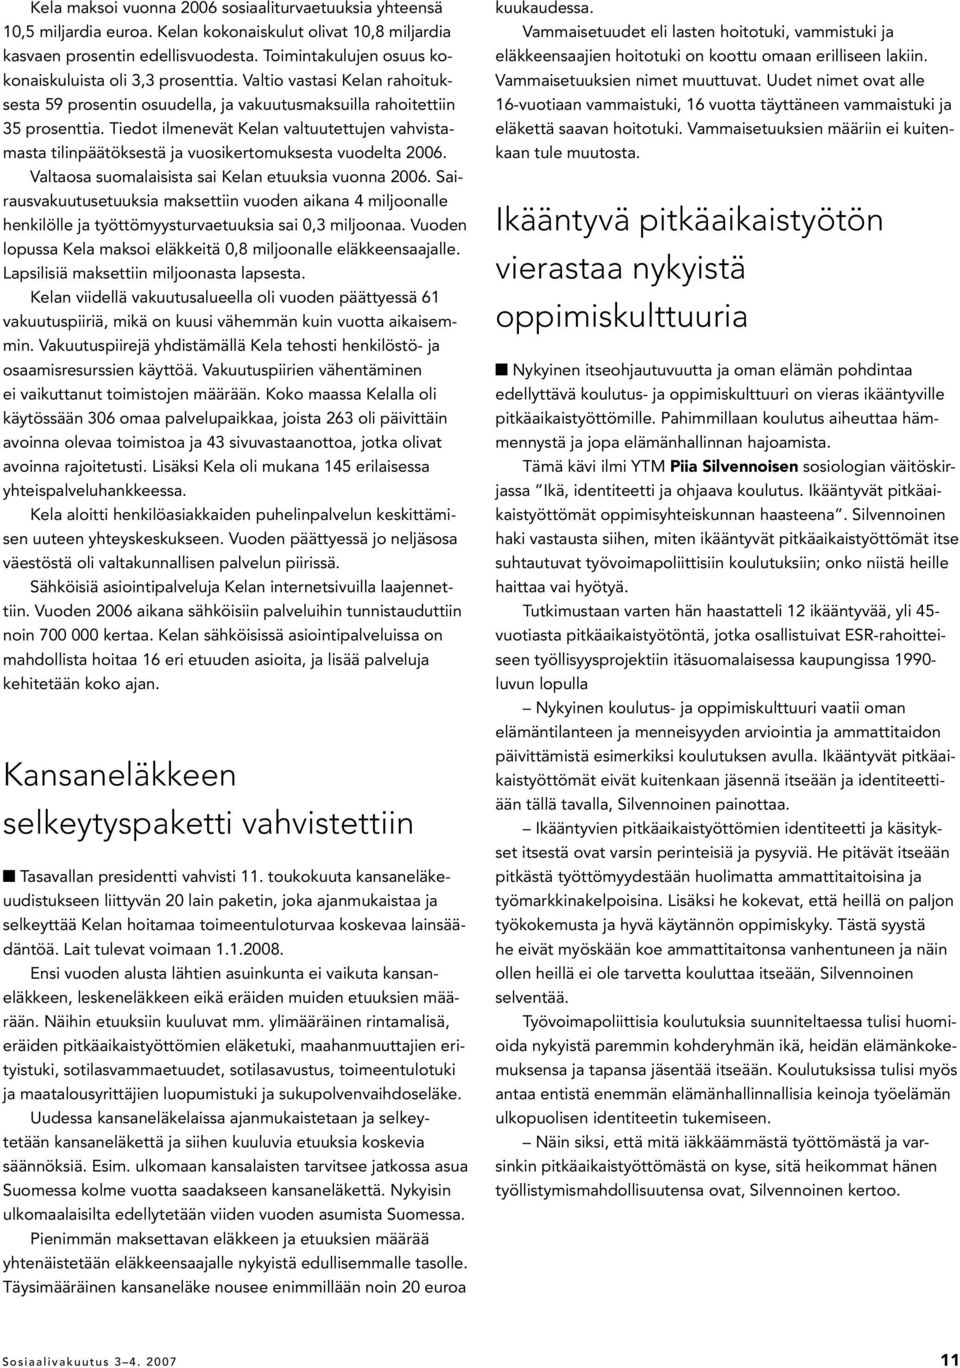 Tiedot ilmenevät Kelan valtuutettujen vahvistamasta tilinpäätöksestä ja vuosikertomuksesta vuodelta 2006. Valtaosa suomalaisista sai Kelan etuuksia vuonna 2006.